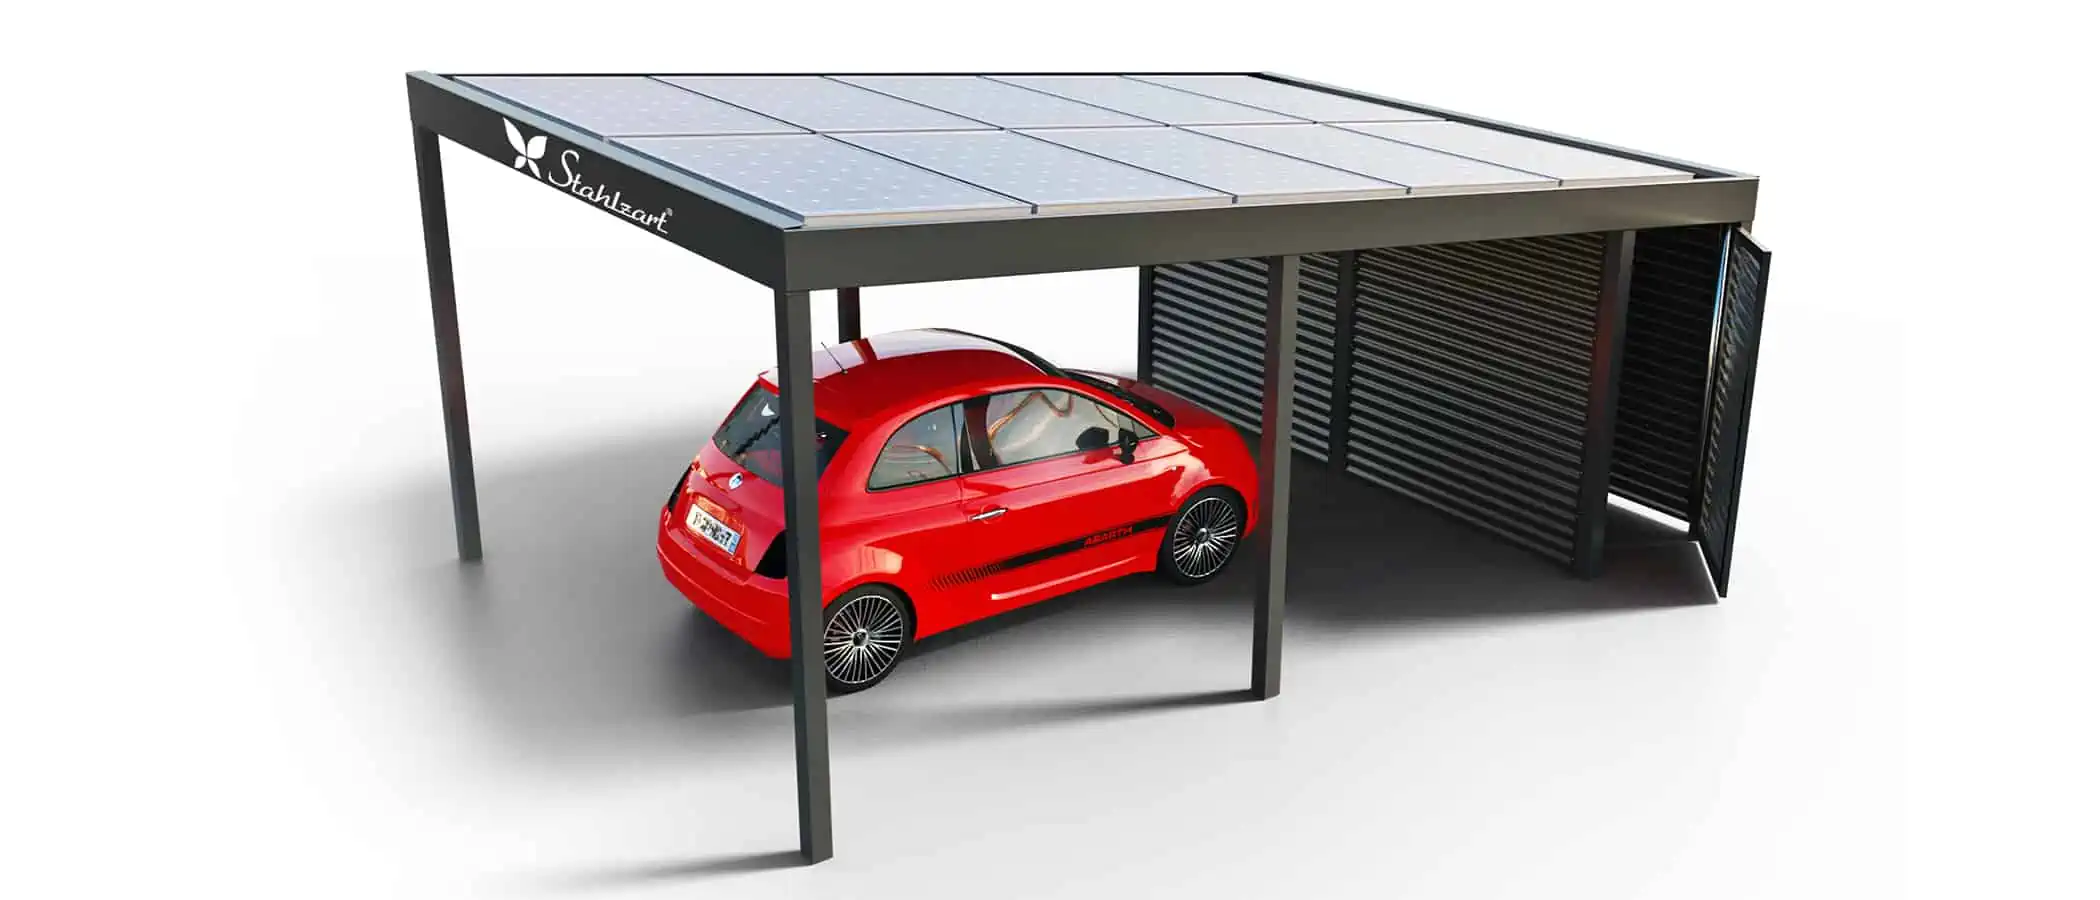 solar-carport-mit-pultdach-carports-solarcarport-pultdach-carportdach-design-strom-angebot-photovoltaikanlage-module-solardach-dachflaeche-metall-stahl-einzelcarport-mit-schuppen-tuer-stahlzart